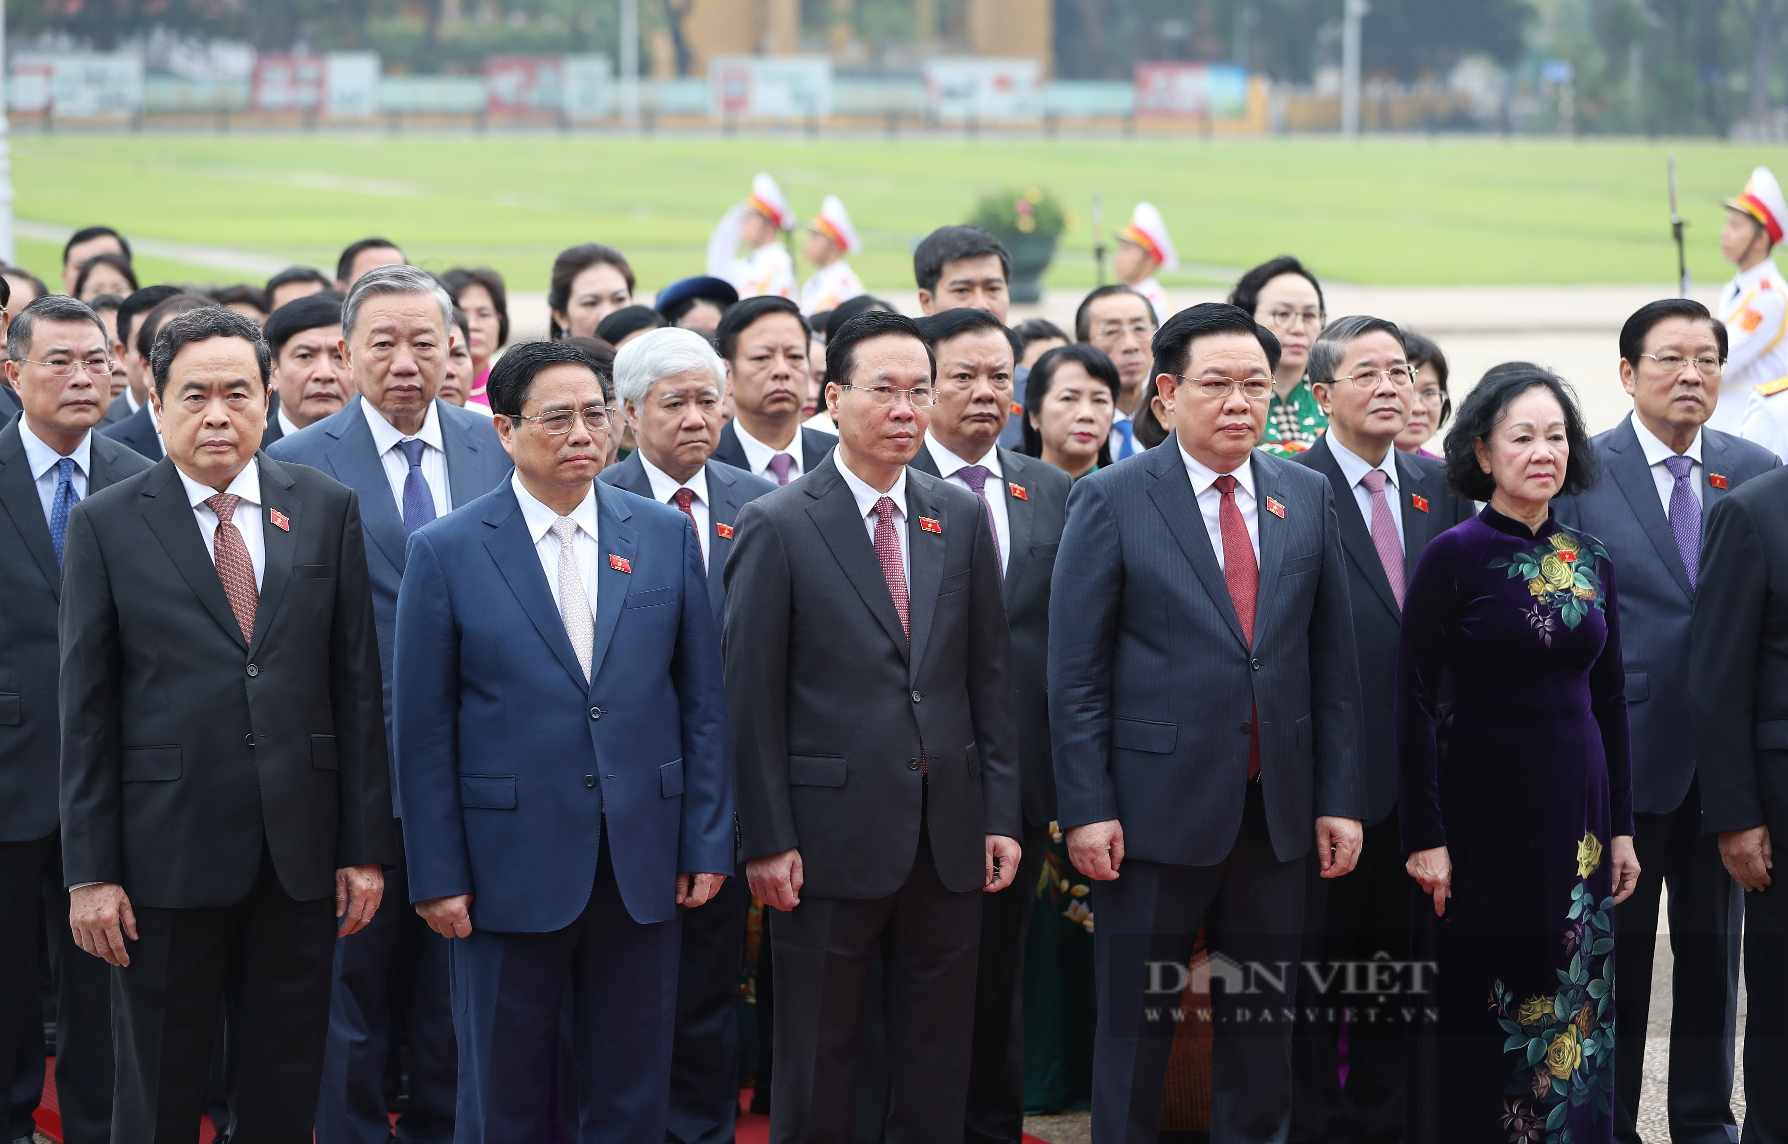 Lãnh đạo Đảng, Nhà nước viếng Chủ tịch Hồ Chí Minh trước giờ khai mạc Kỳ 6 Quốc hội khóa XV - Ảnh 3.